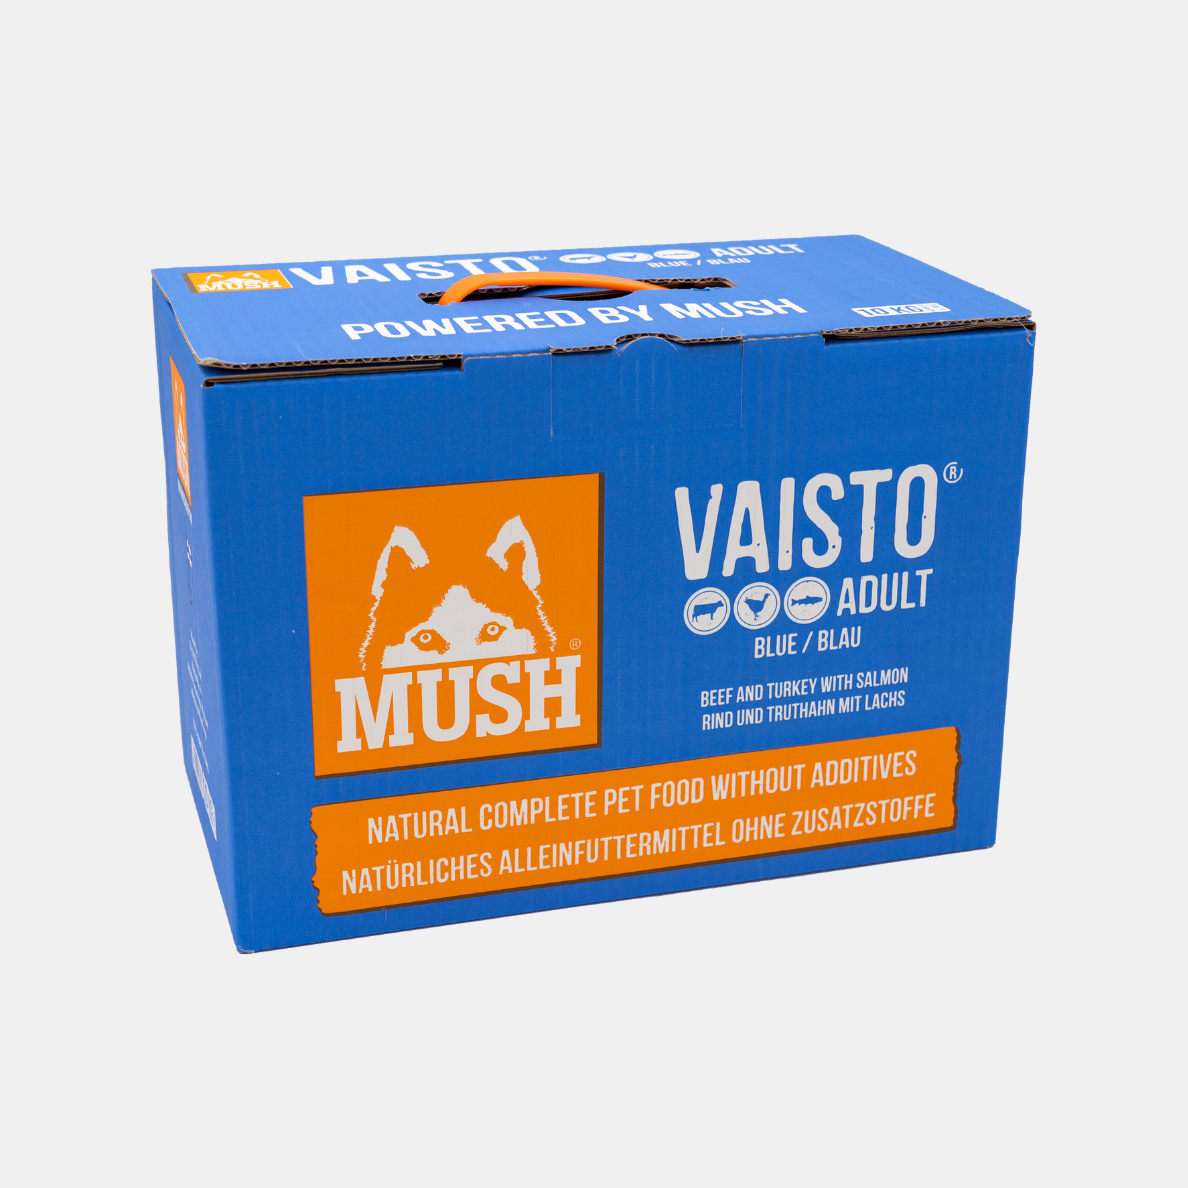 MUSH Vaisto® Beef-Turkey-Salmon ADULT Blue